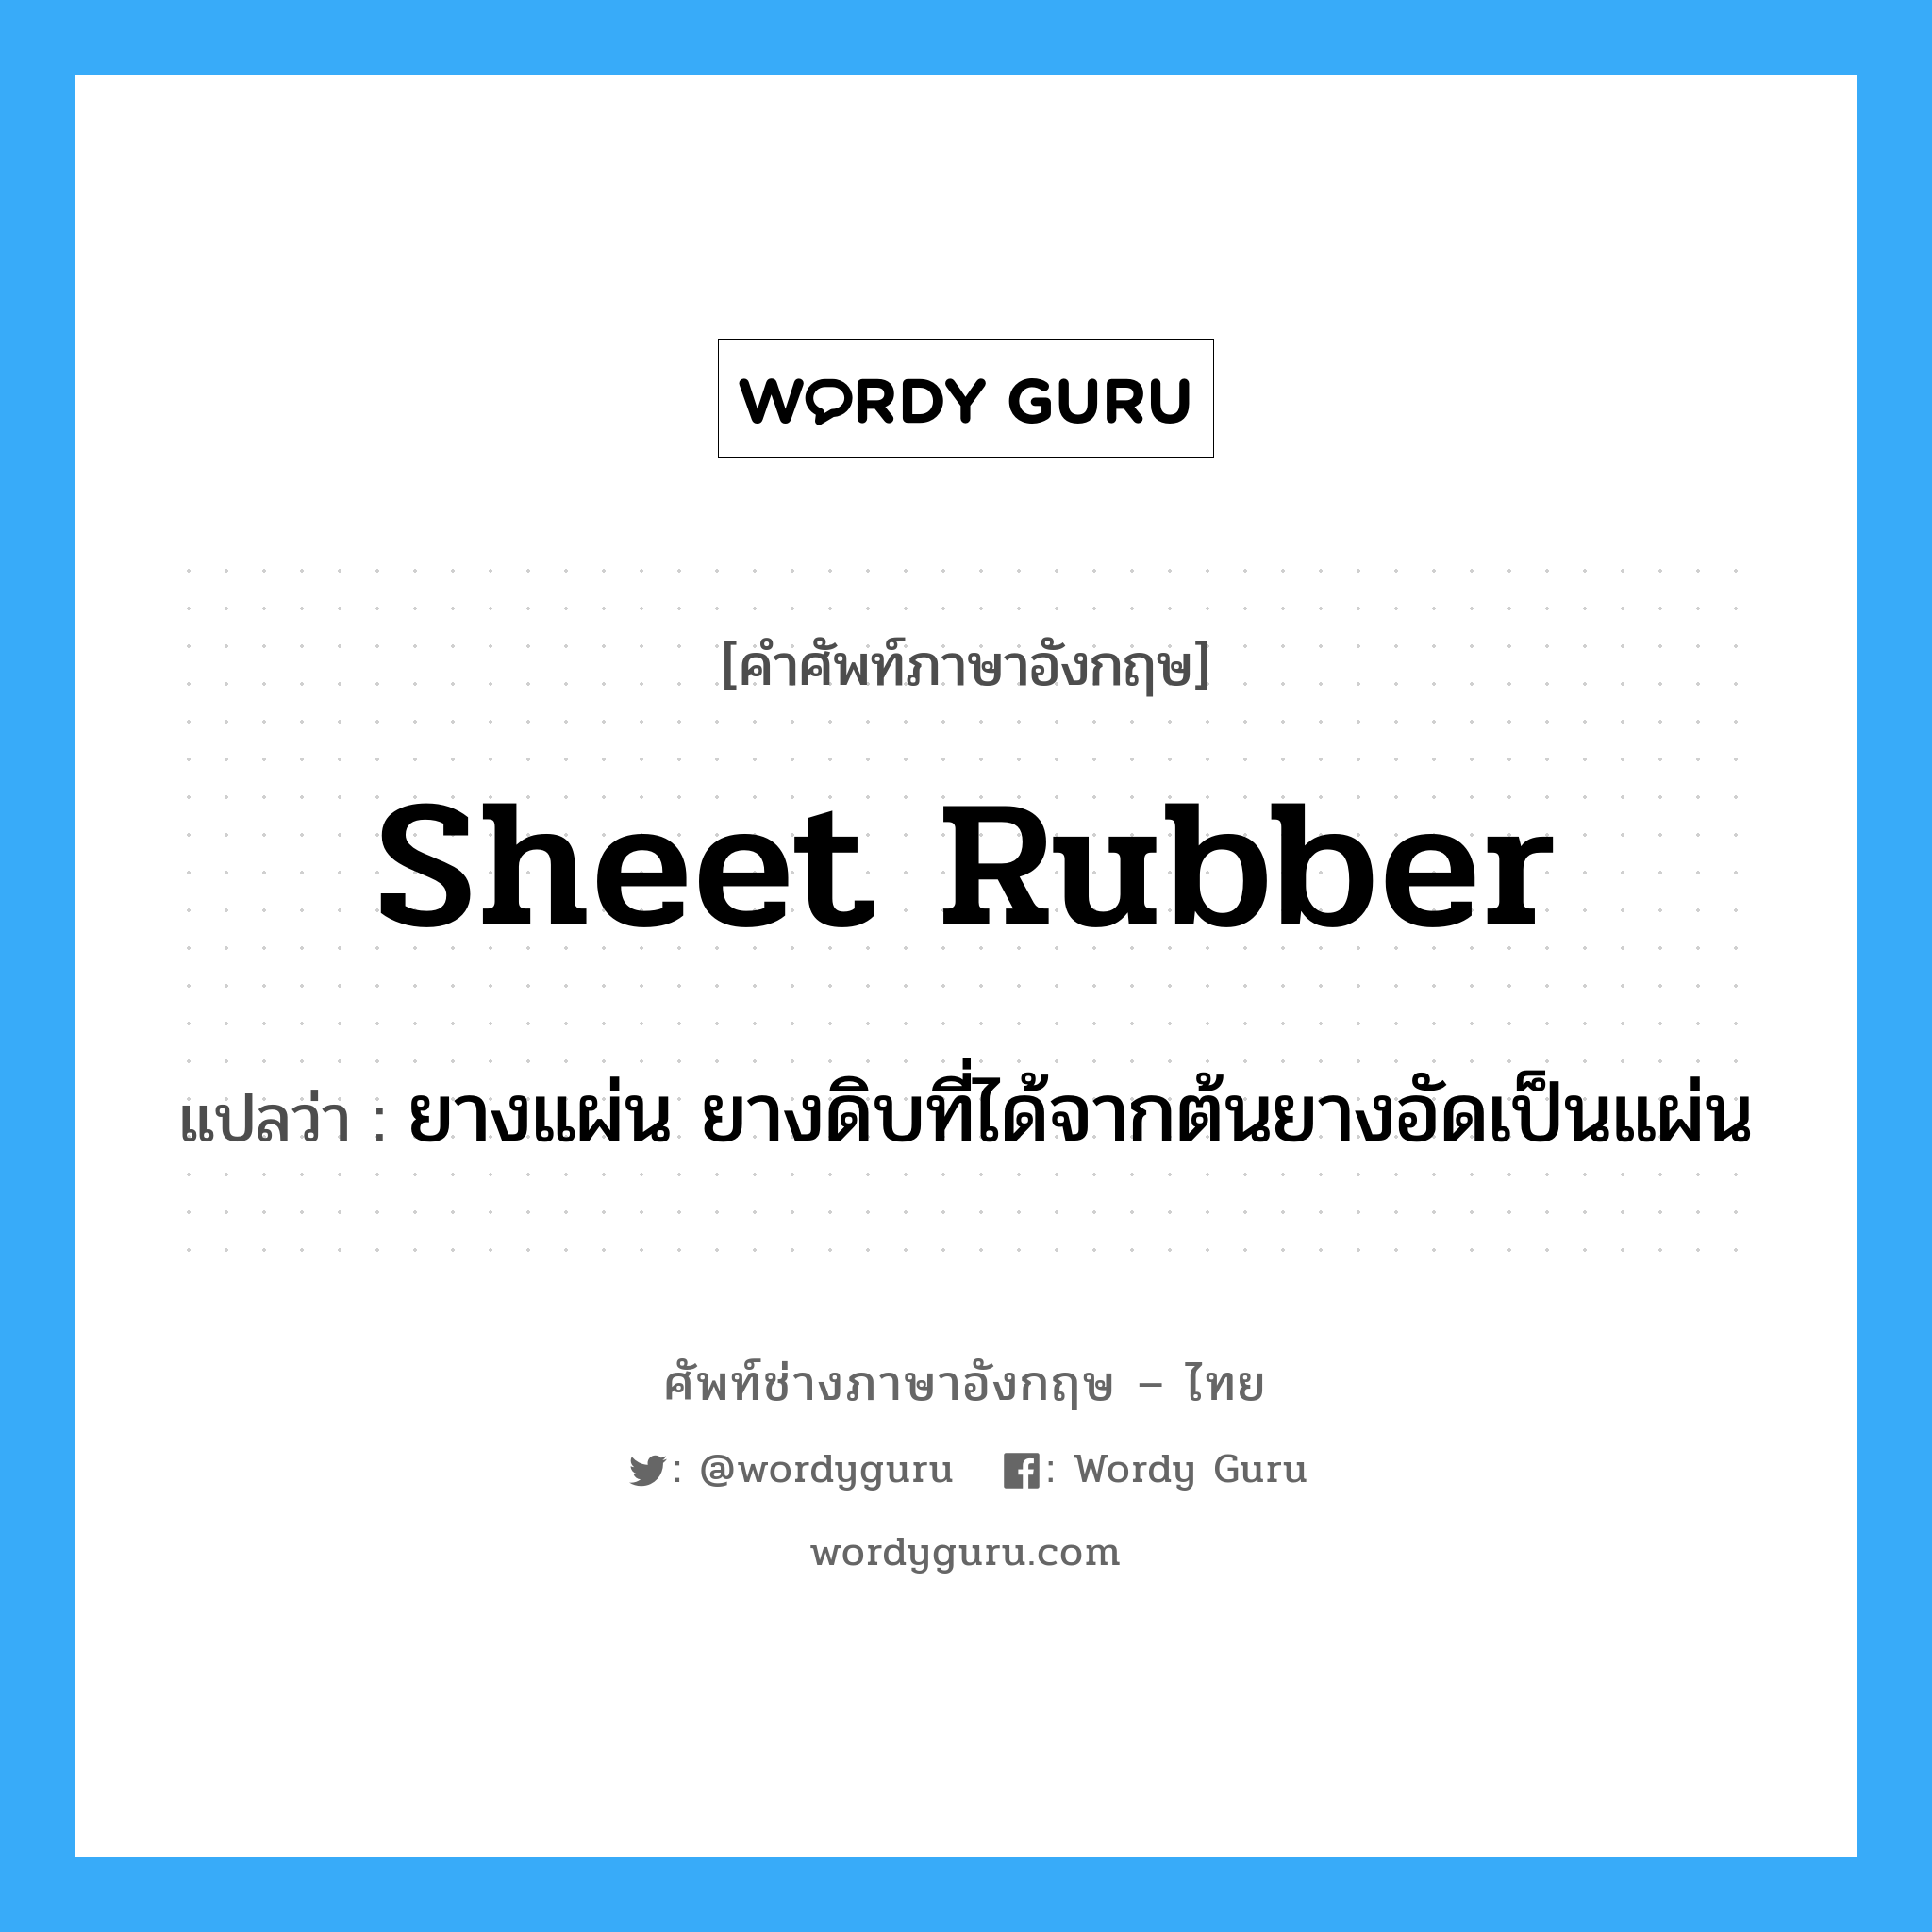 sheet rubber แปลว่า?, คำศัพท์ช่างภาษาอังกฤษ - ไทย sheet rubber คำศัพท์ภาษาอังกฤษ sheet rubber แปลว่า ยางแผ่น ยางดิบที่ได้จากต้นยางอัดเป็นแผ่น